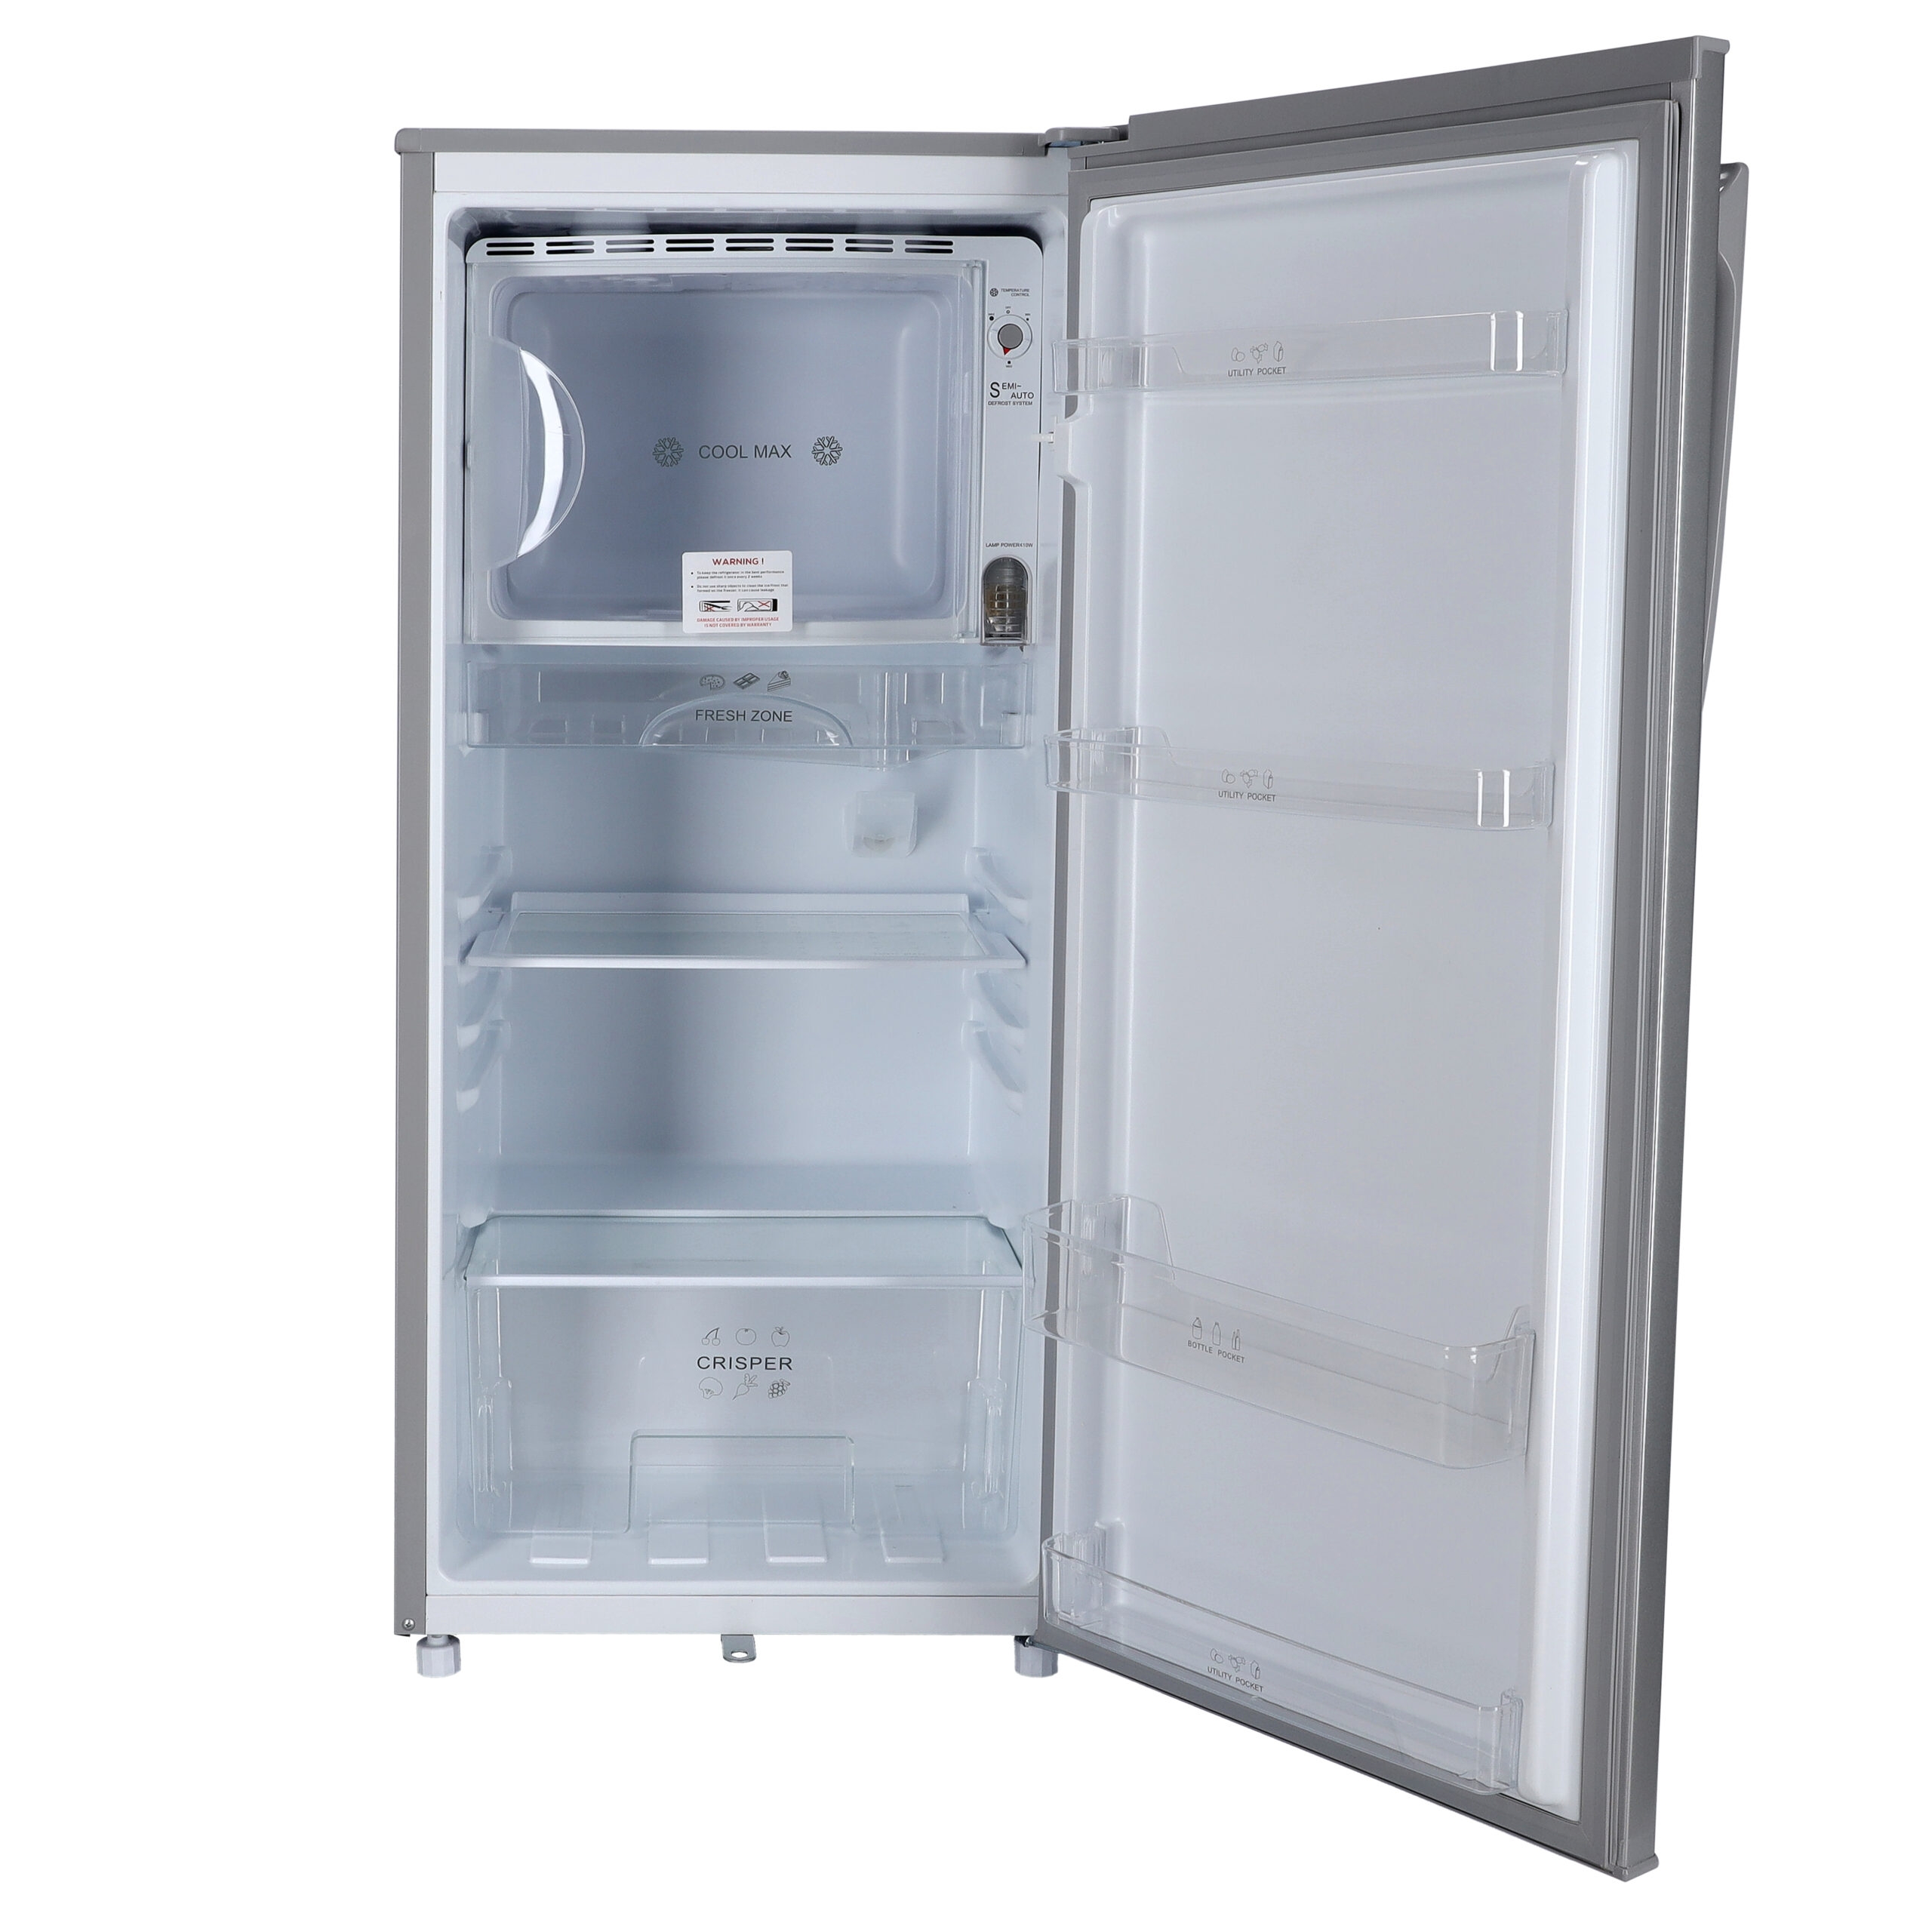 ثلاجة 200 لتر جيباس تبريد سريع Geepas 200L Direct Cool Refrigerator